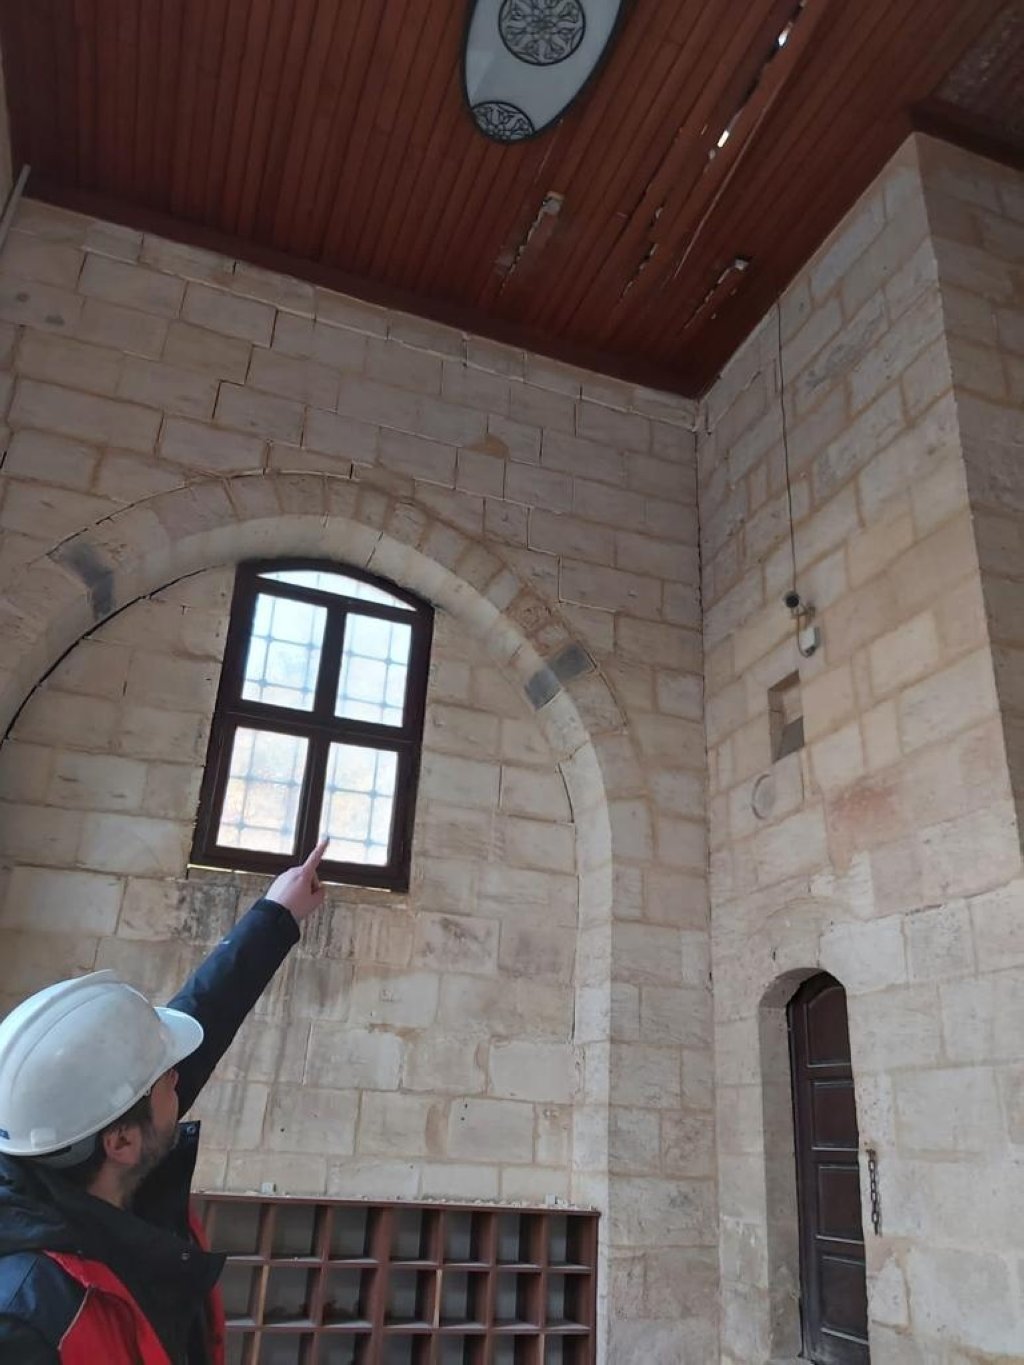 Pekerjaan restorasi berlanjut untuk bangunan bersejarah, seperti Gereja Ortodoks Yunani St. Nicholas, yang rusak akibat dua gempa bumi besar, Antakya, Türkiye, 15 Februari 2023. (Foto AA)